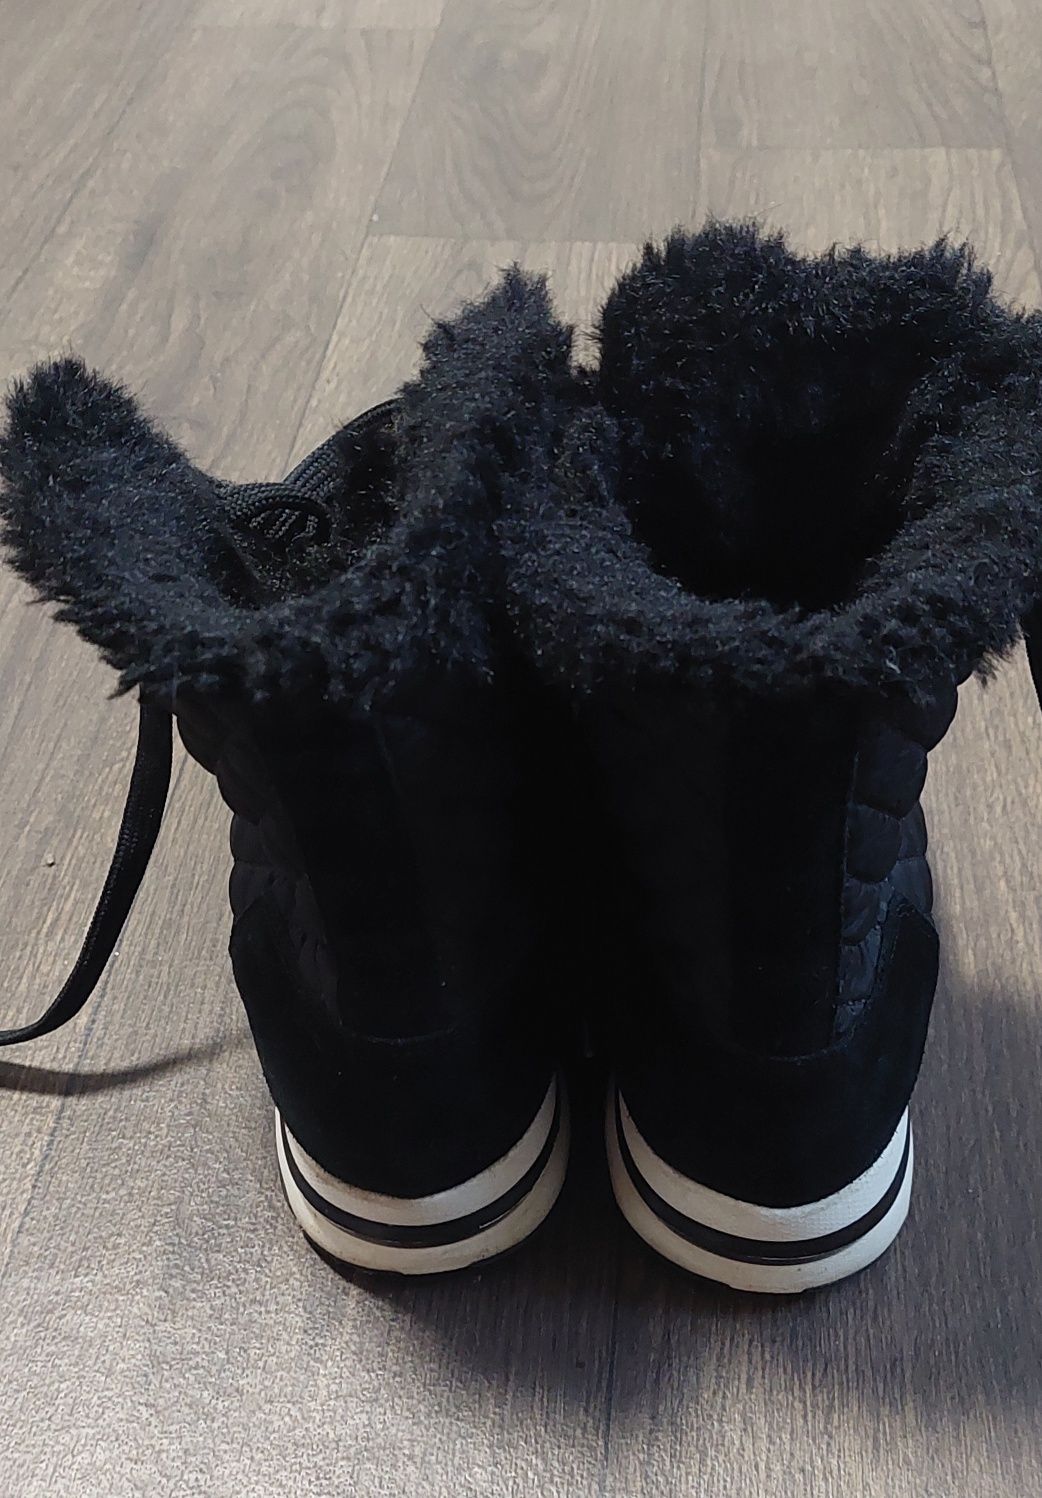 брендовые зимние кроссовки, полуботинки voile blanche  39 размер в отл